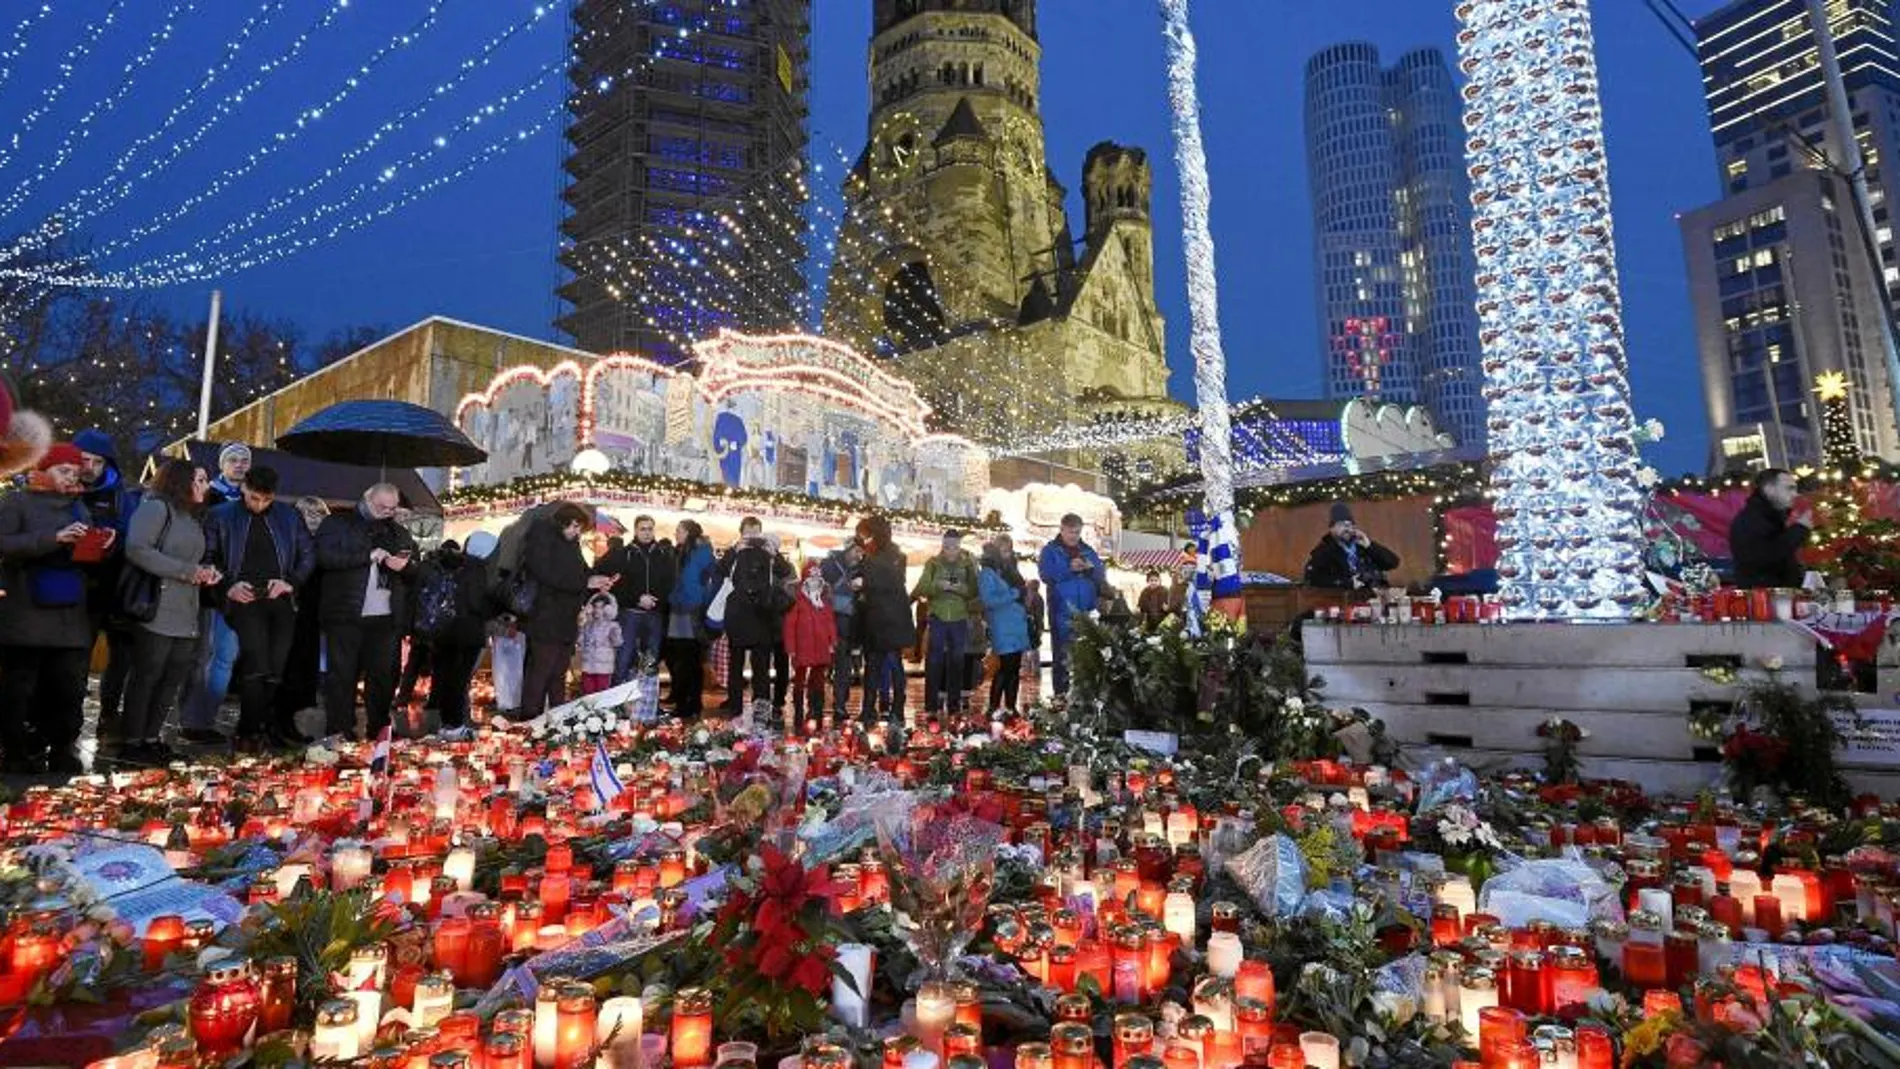 Vista de las velas y las flores colocadas en el mercado navideño de Berlín tras el atentado yihadista